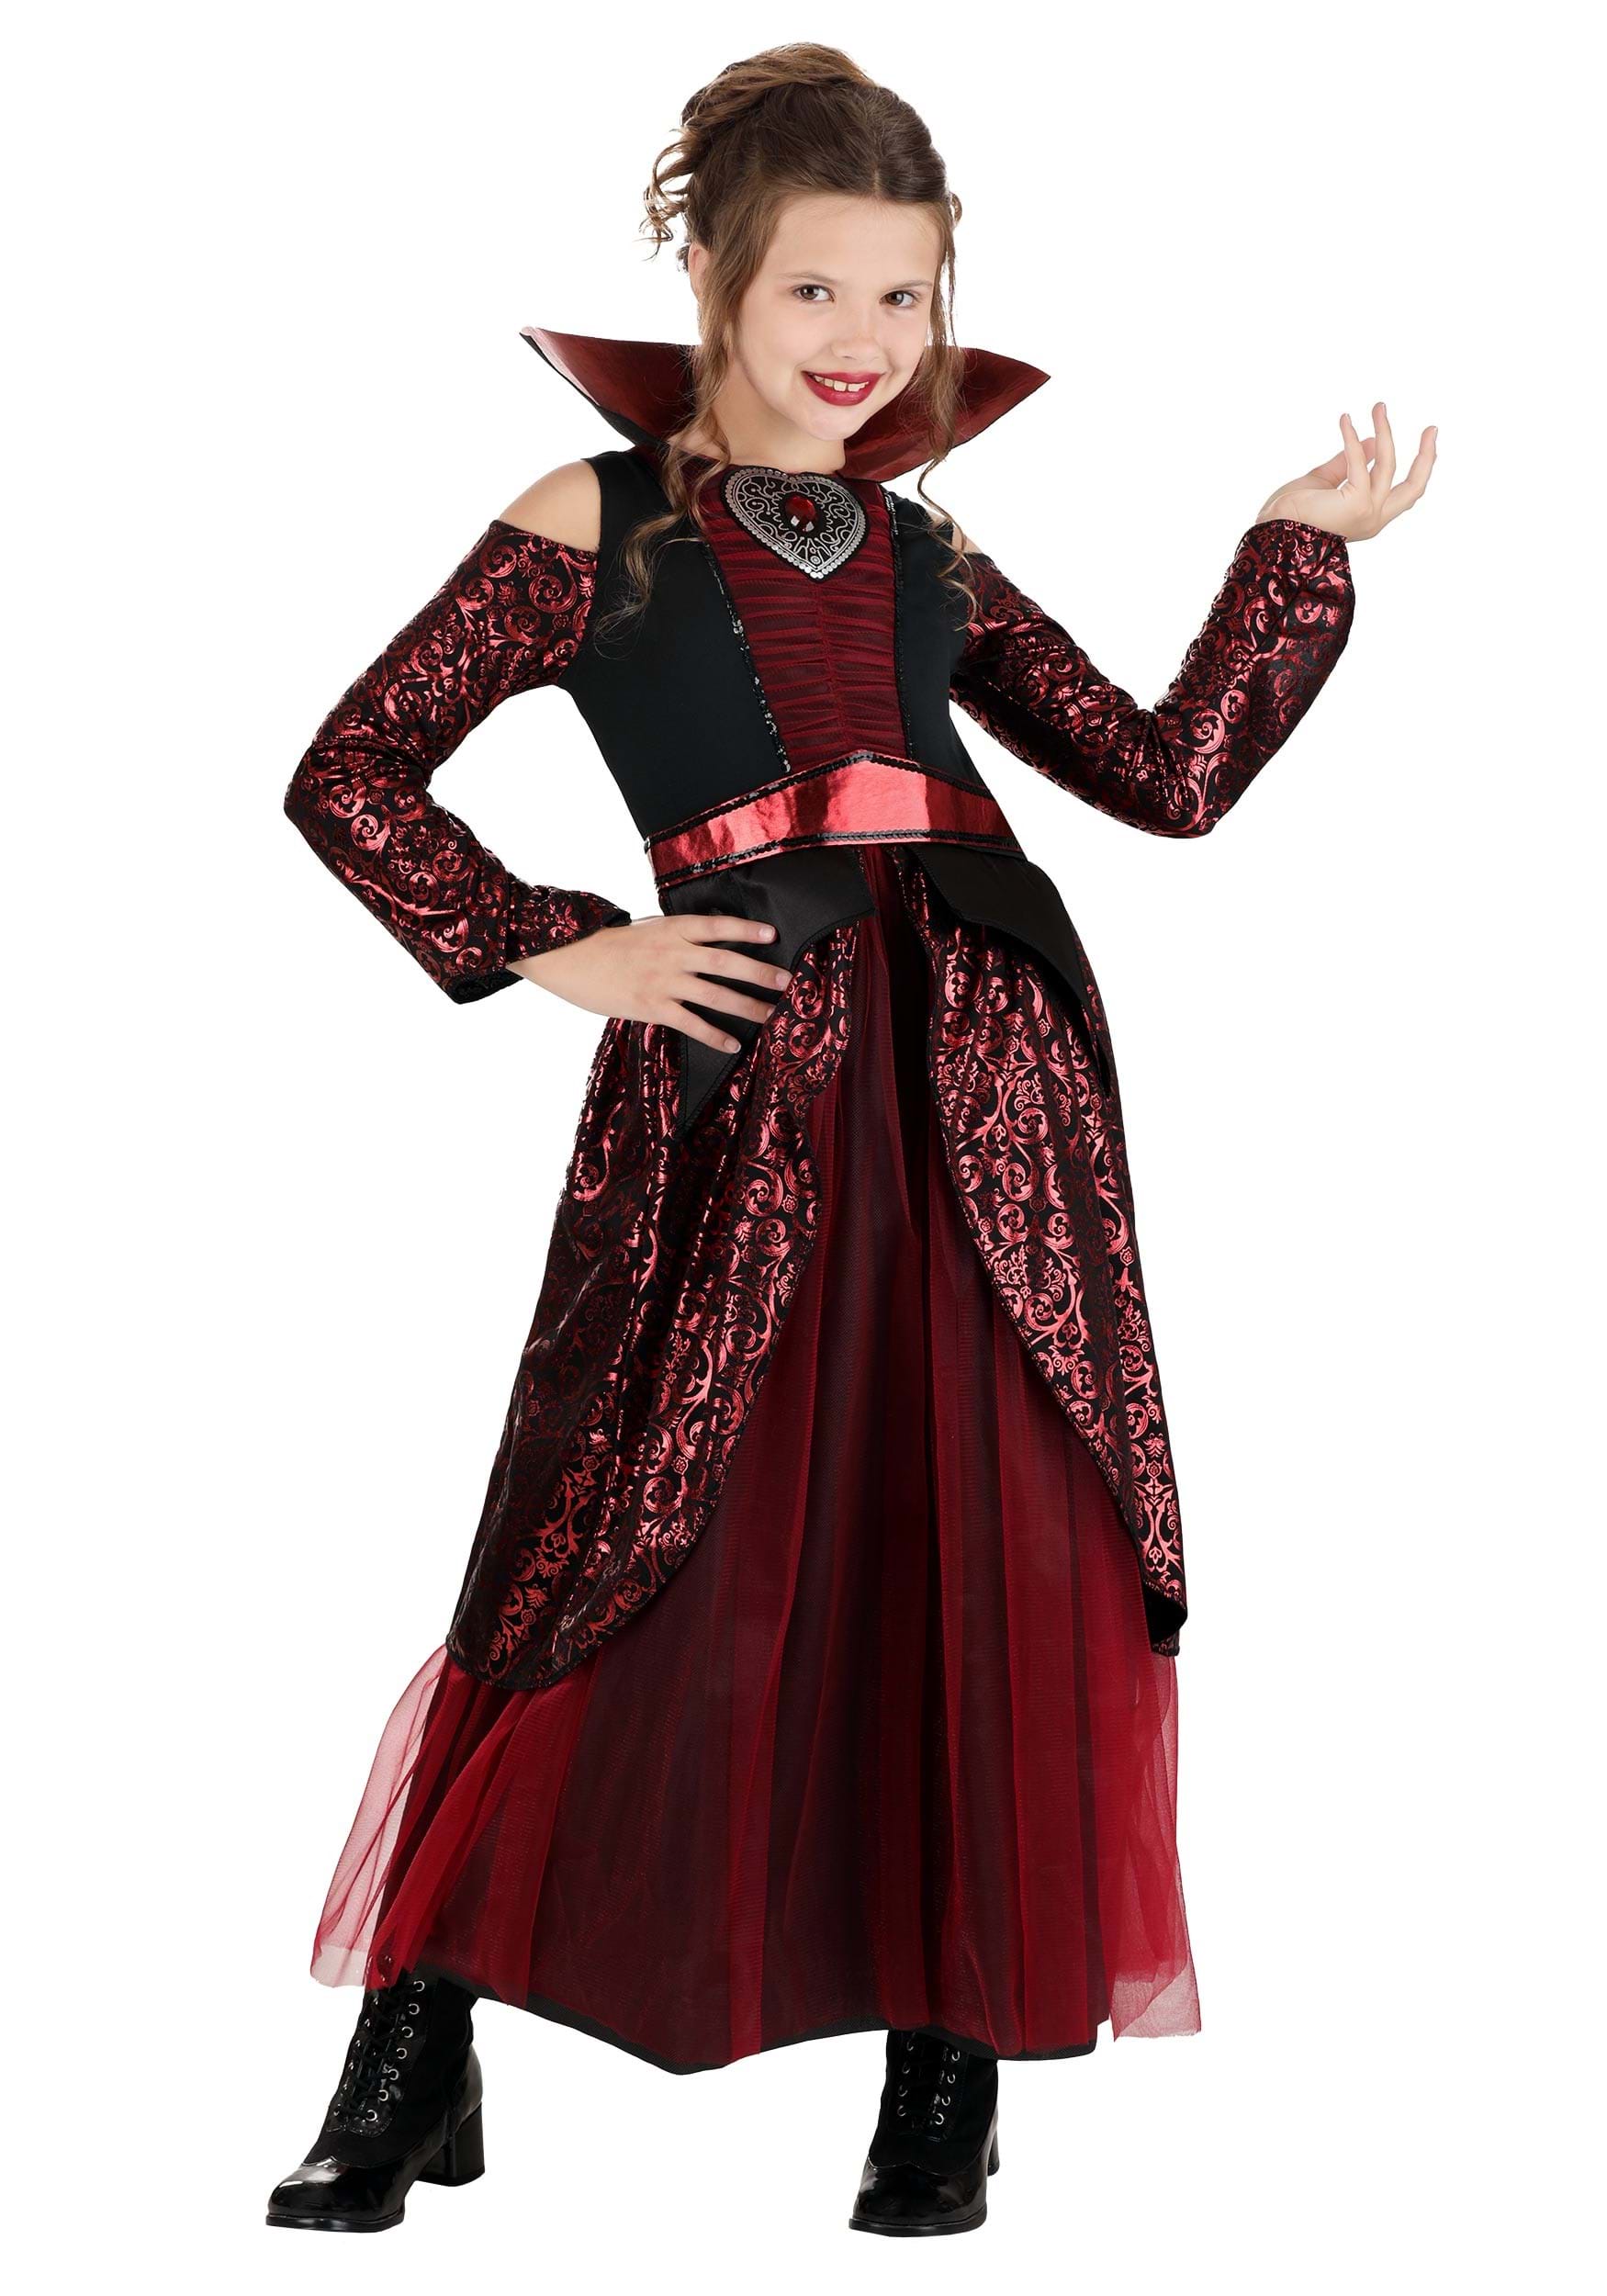 Girl's Vampire Queen Costume Dress